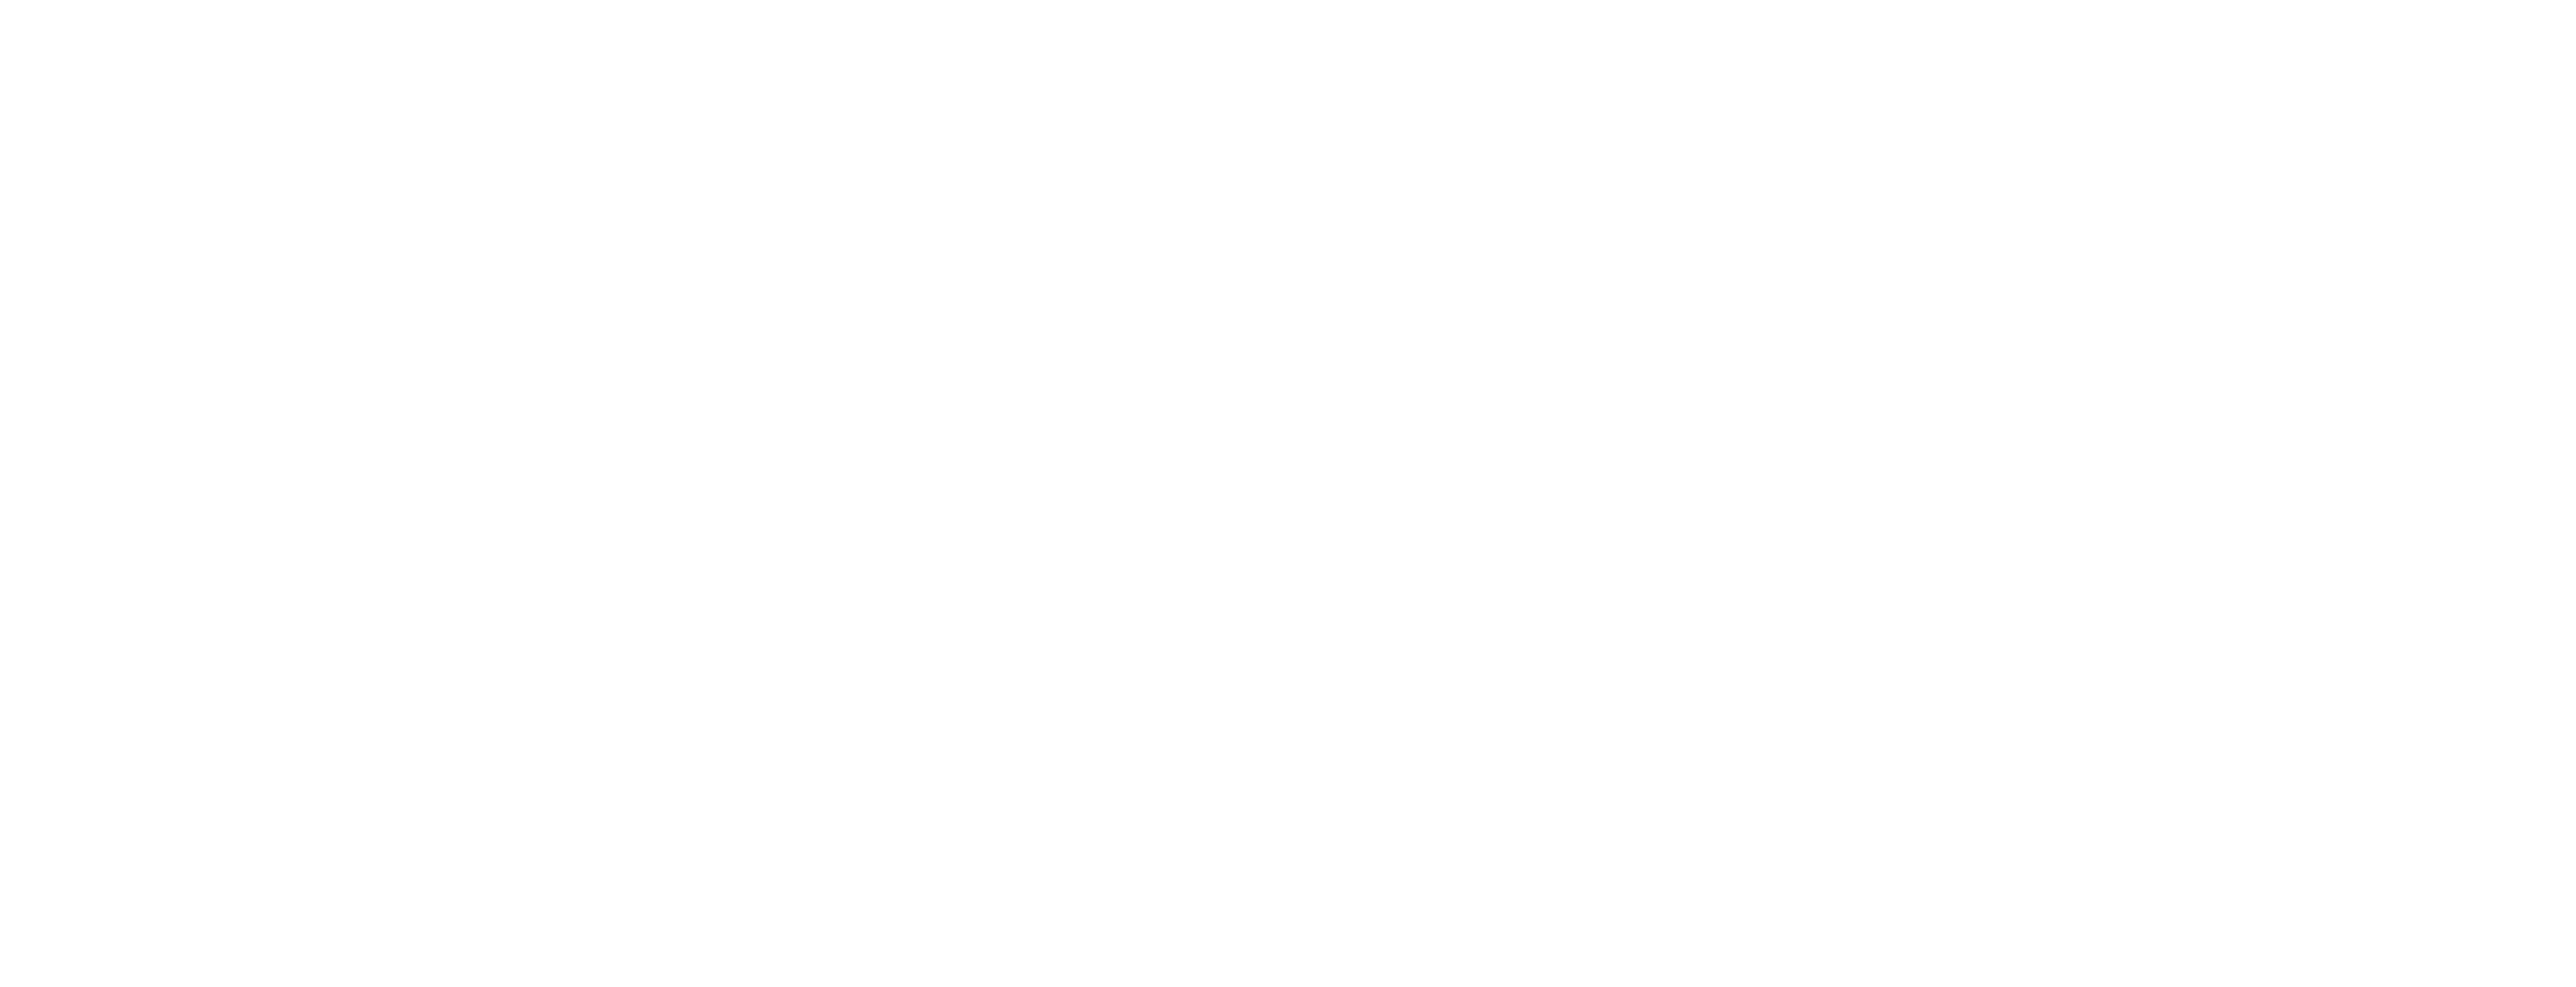 Millennium Bartending Shop